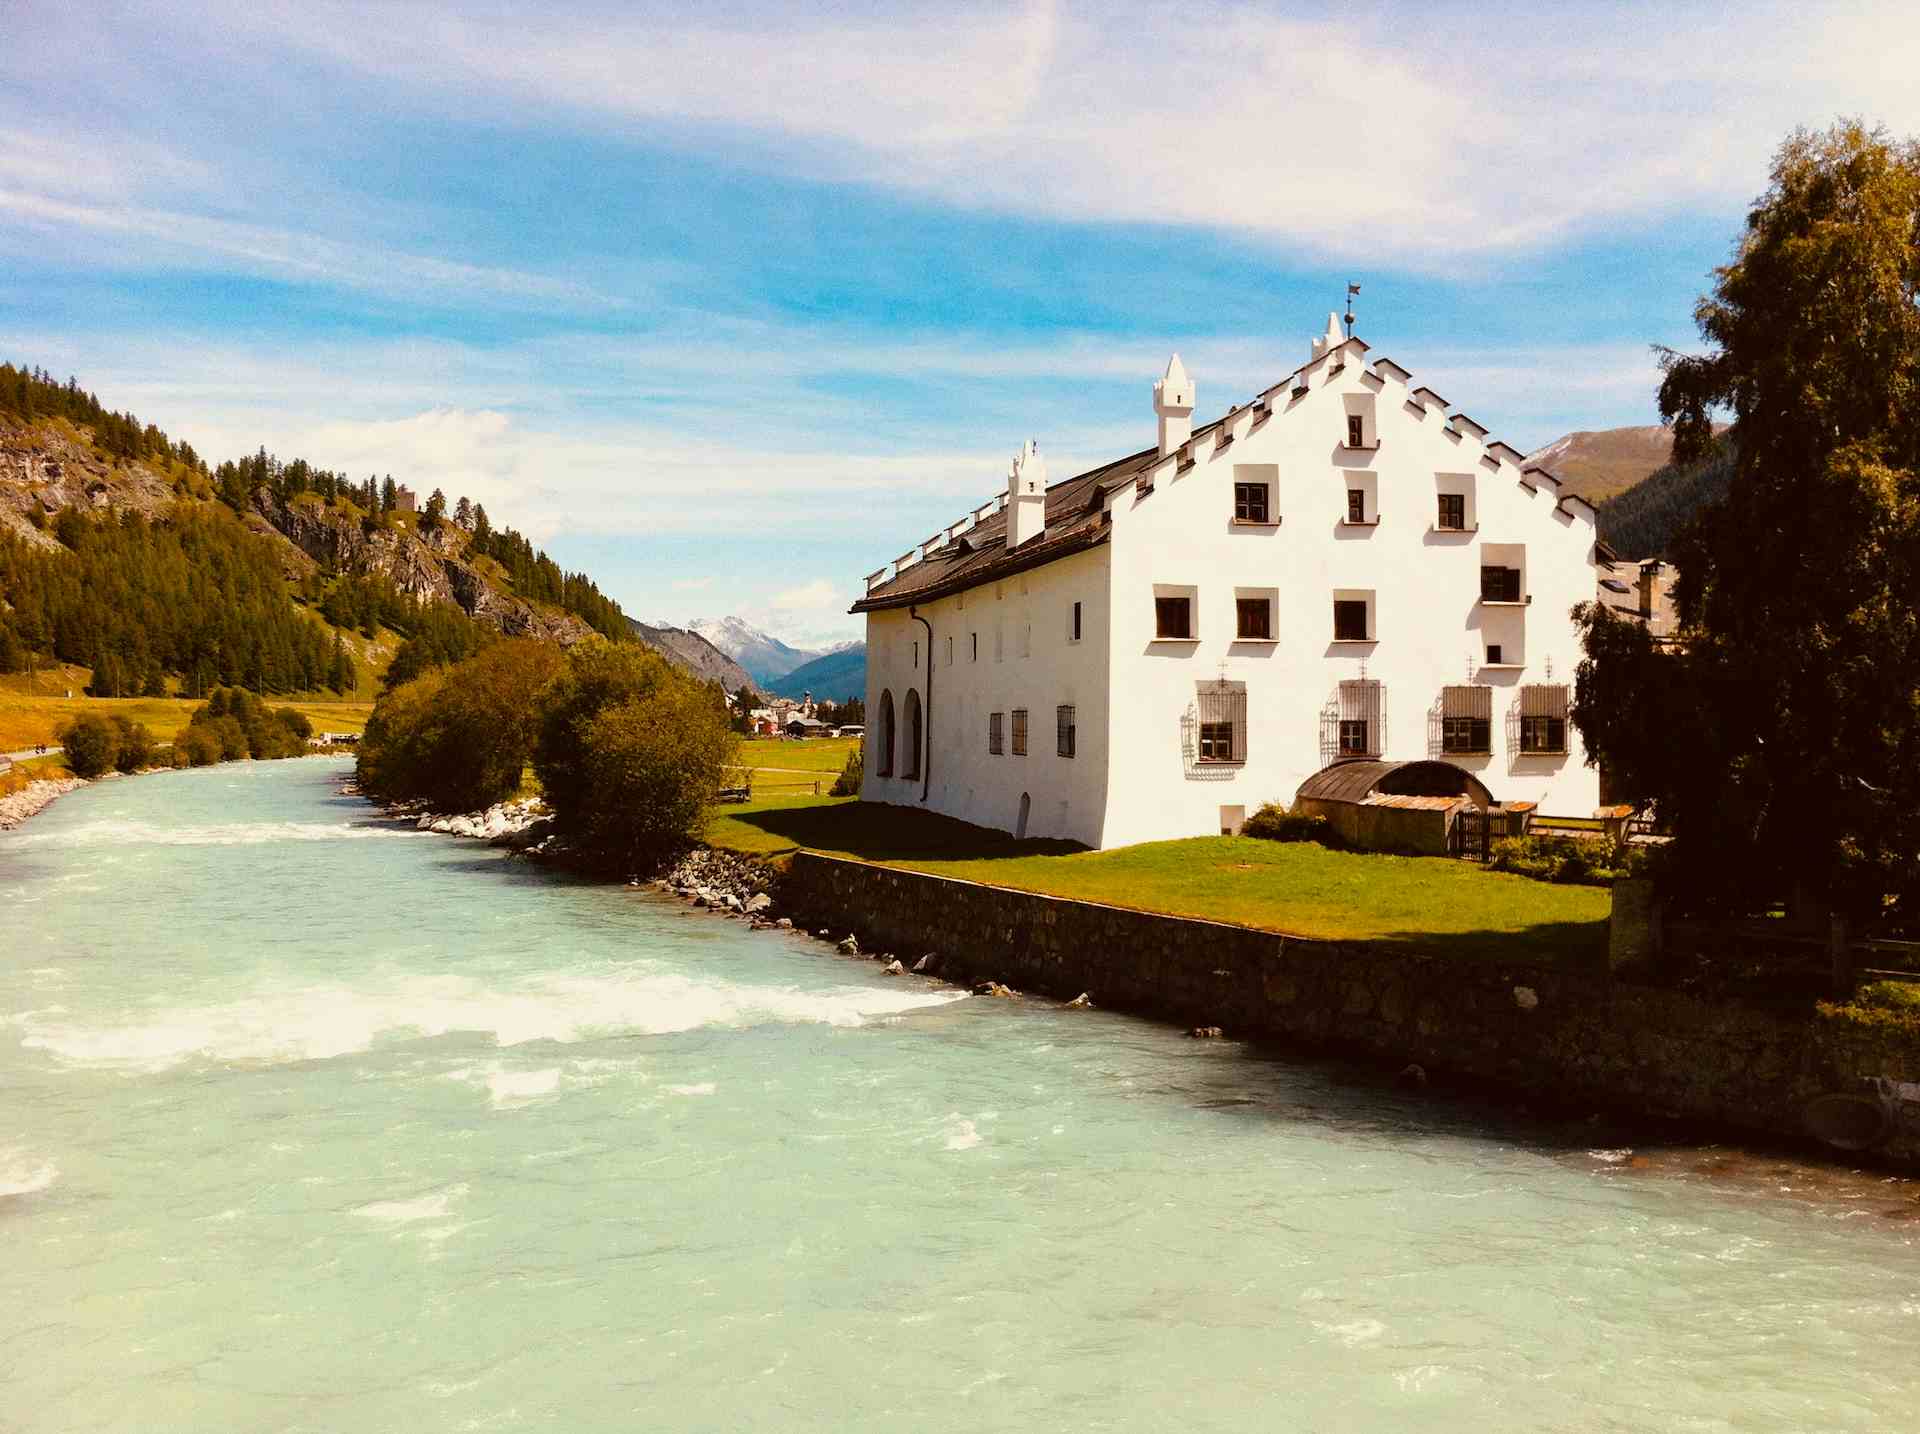 Lammfleisch neu entdecken, Produzent in Surcuolm Kanton Graubünden in der Schweiz